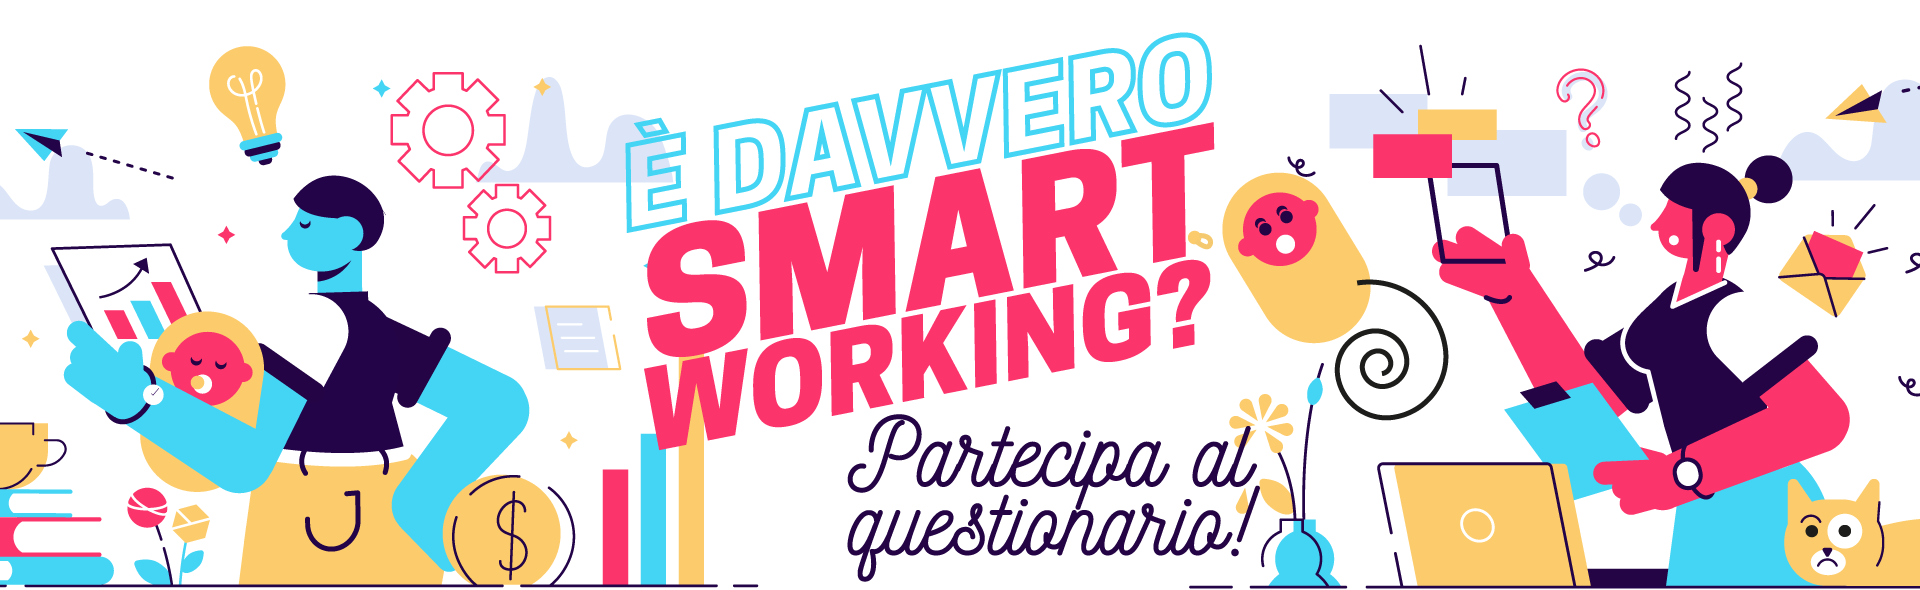 Questionario Smartworking-CGIL TV-IRES